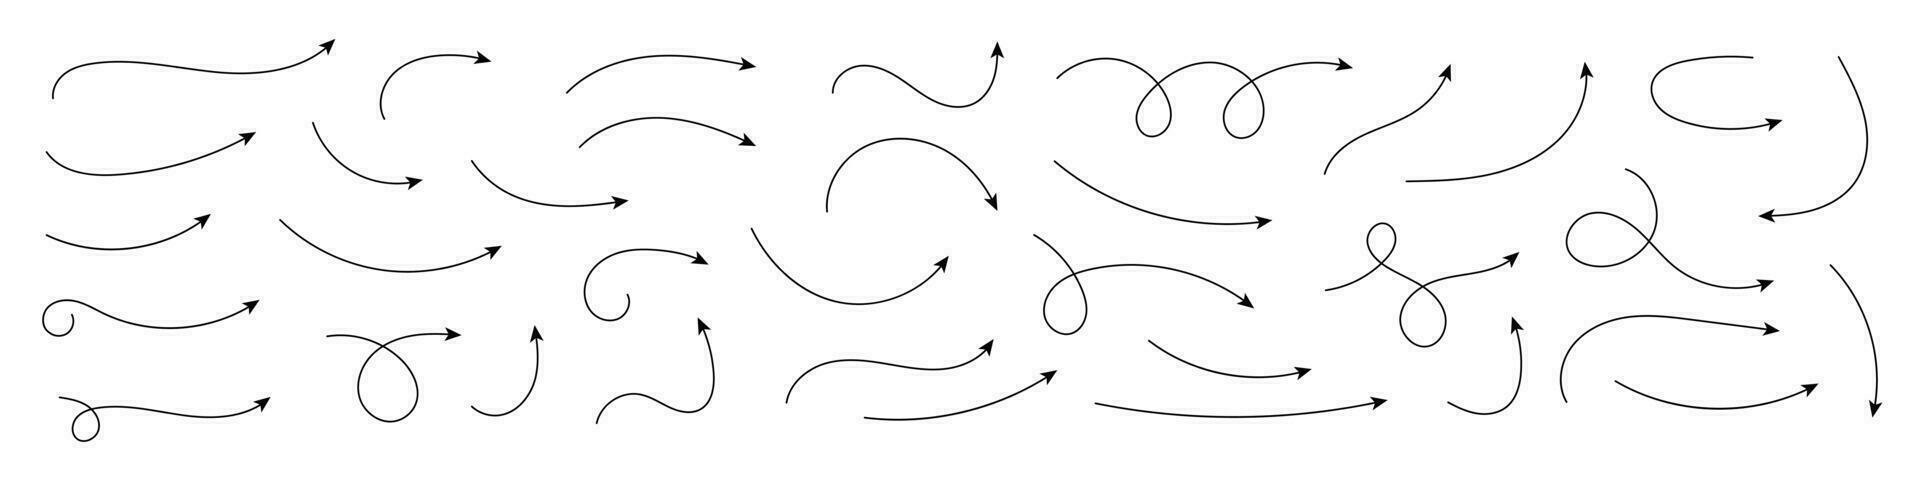 set di frecce curve vettoriali disegnate a mano. schizzo stile scarabocchio. raccolta di indicazioni.